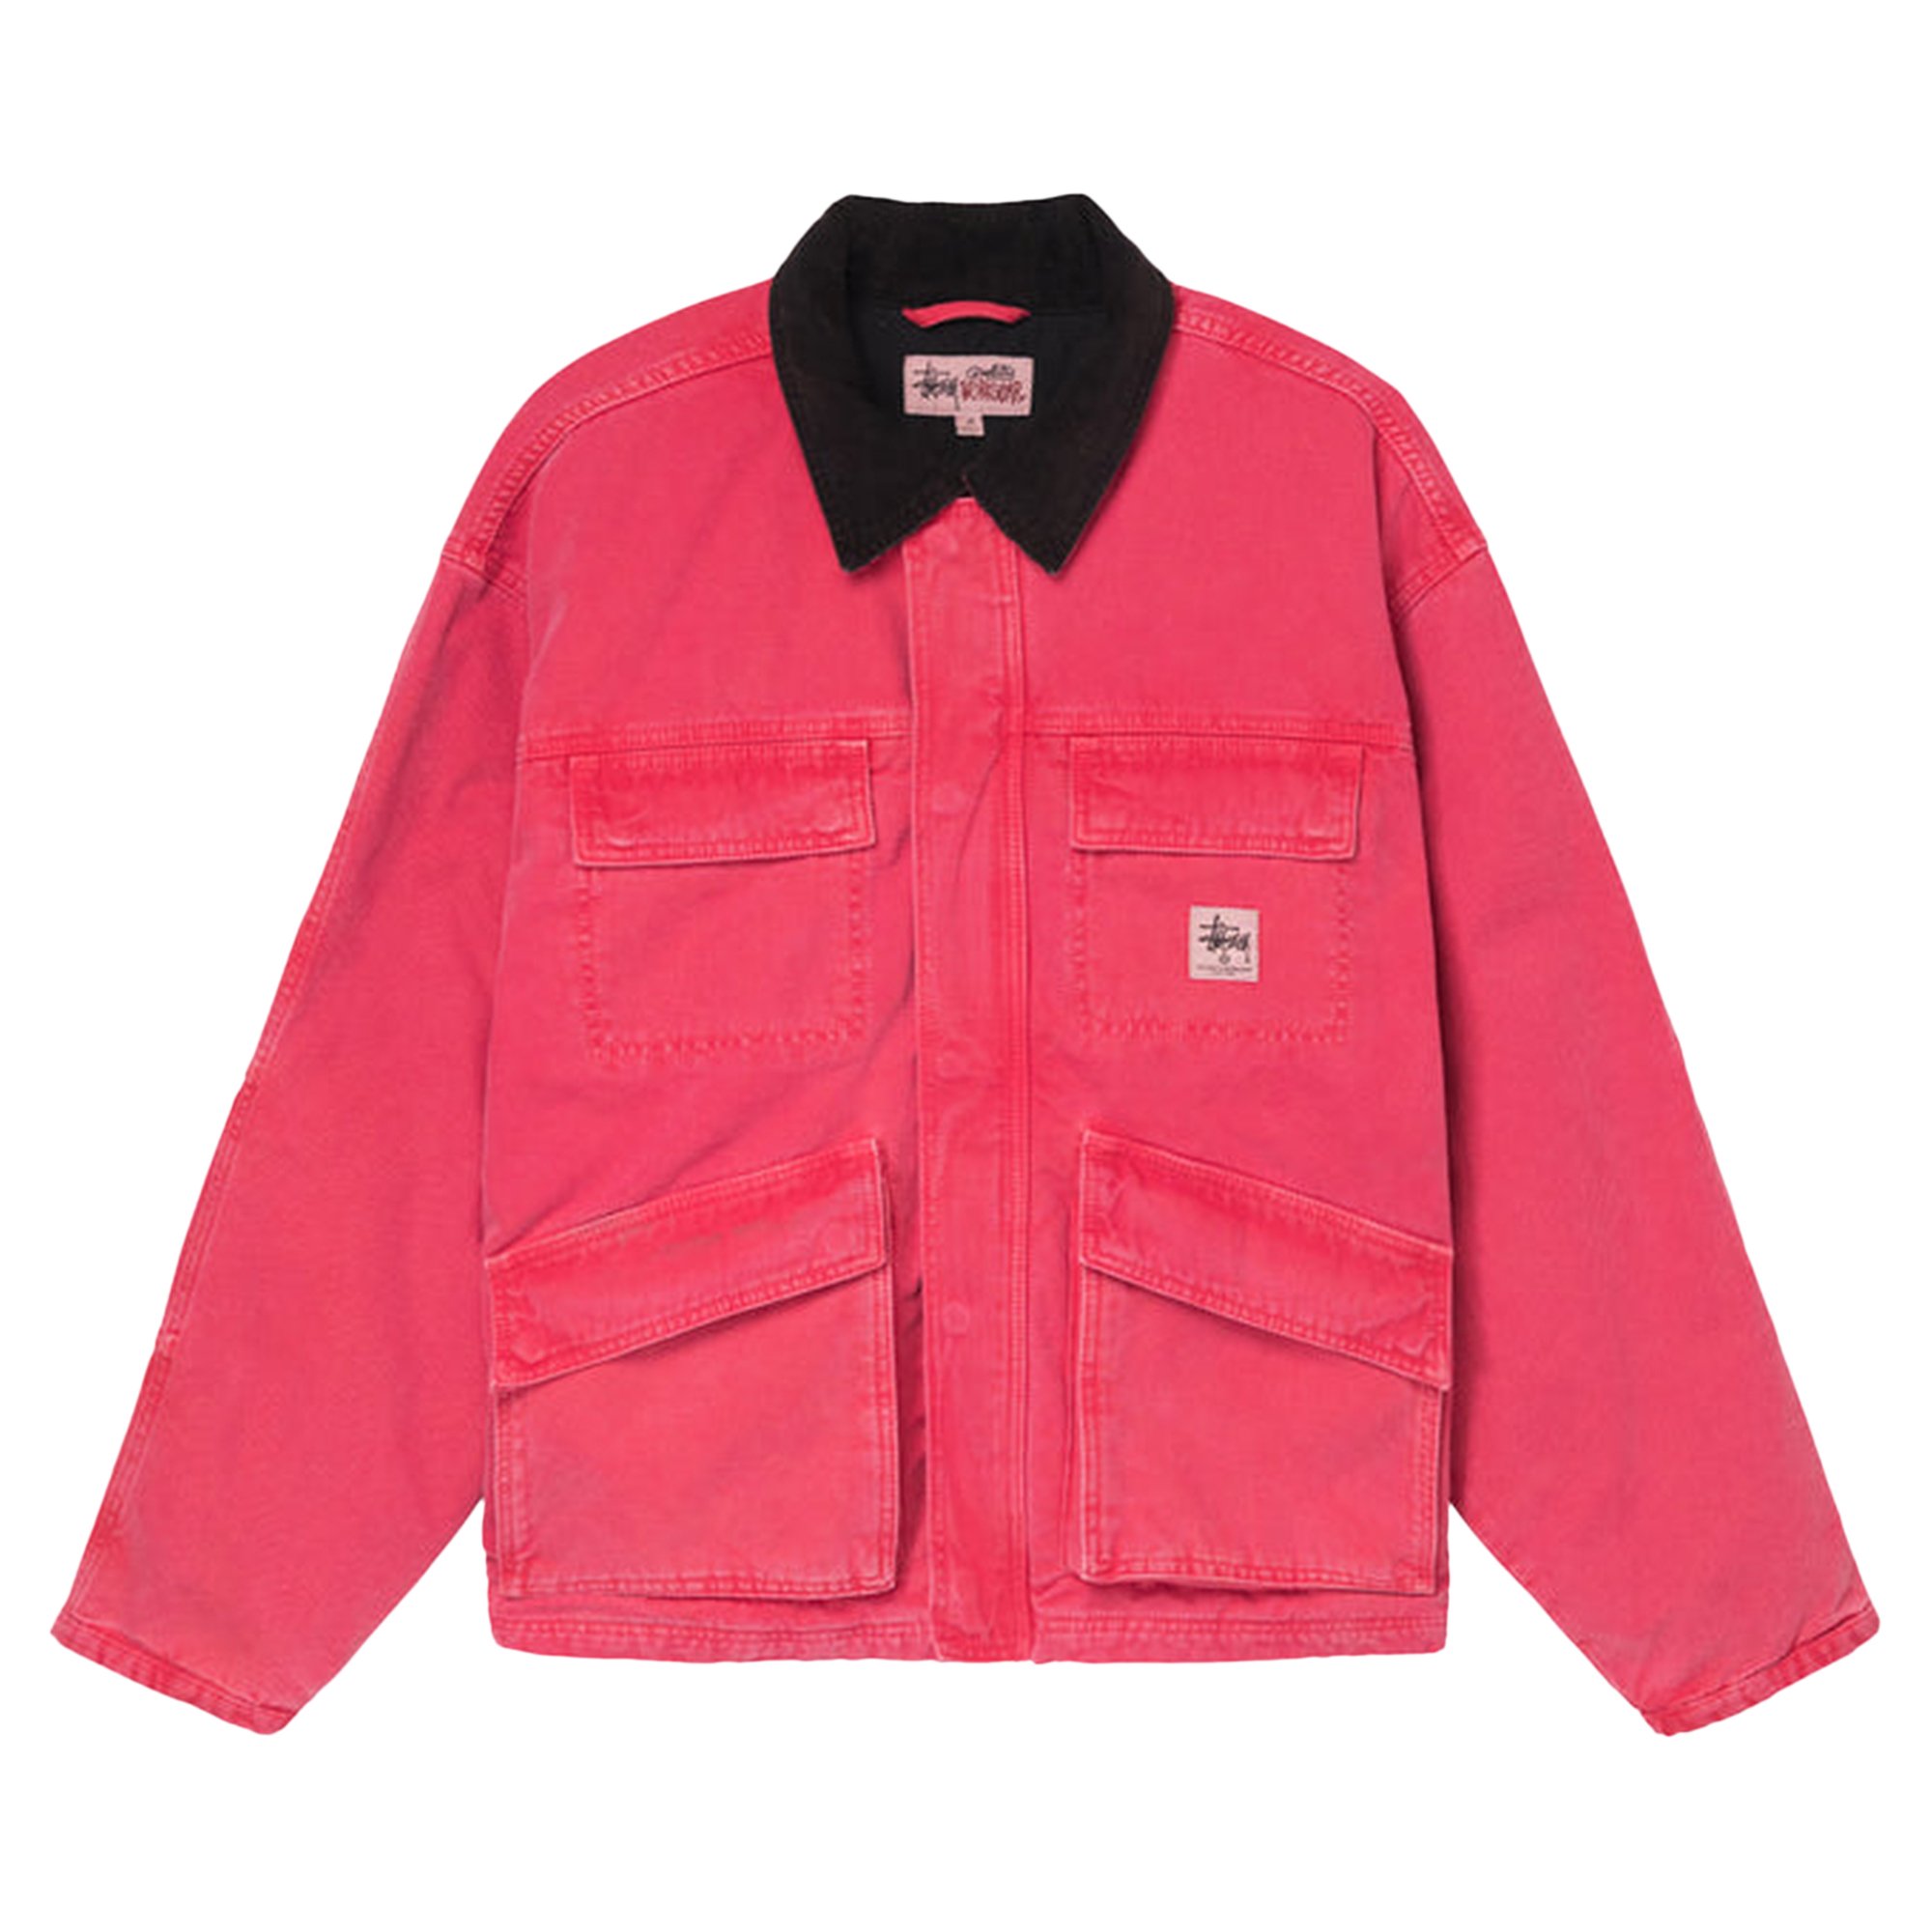 Buy Stussy Washed Canvas Shop Jacket 'Hot Pink' - 115589 HOT | GOAT SA